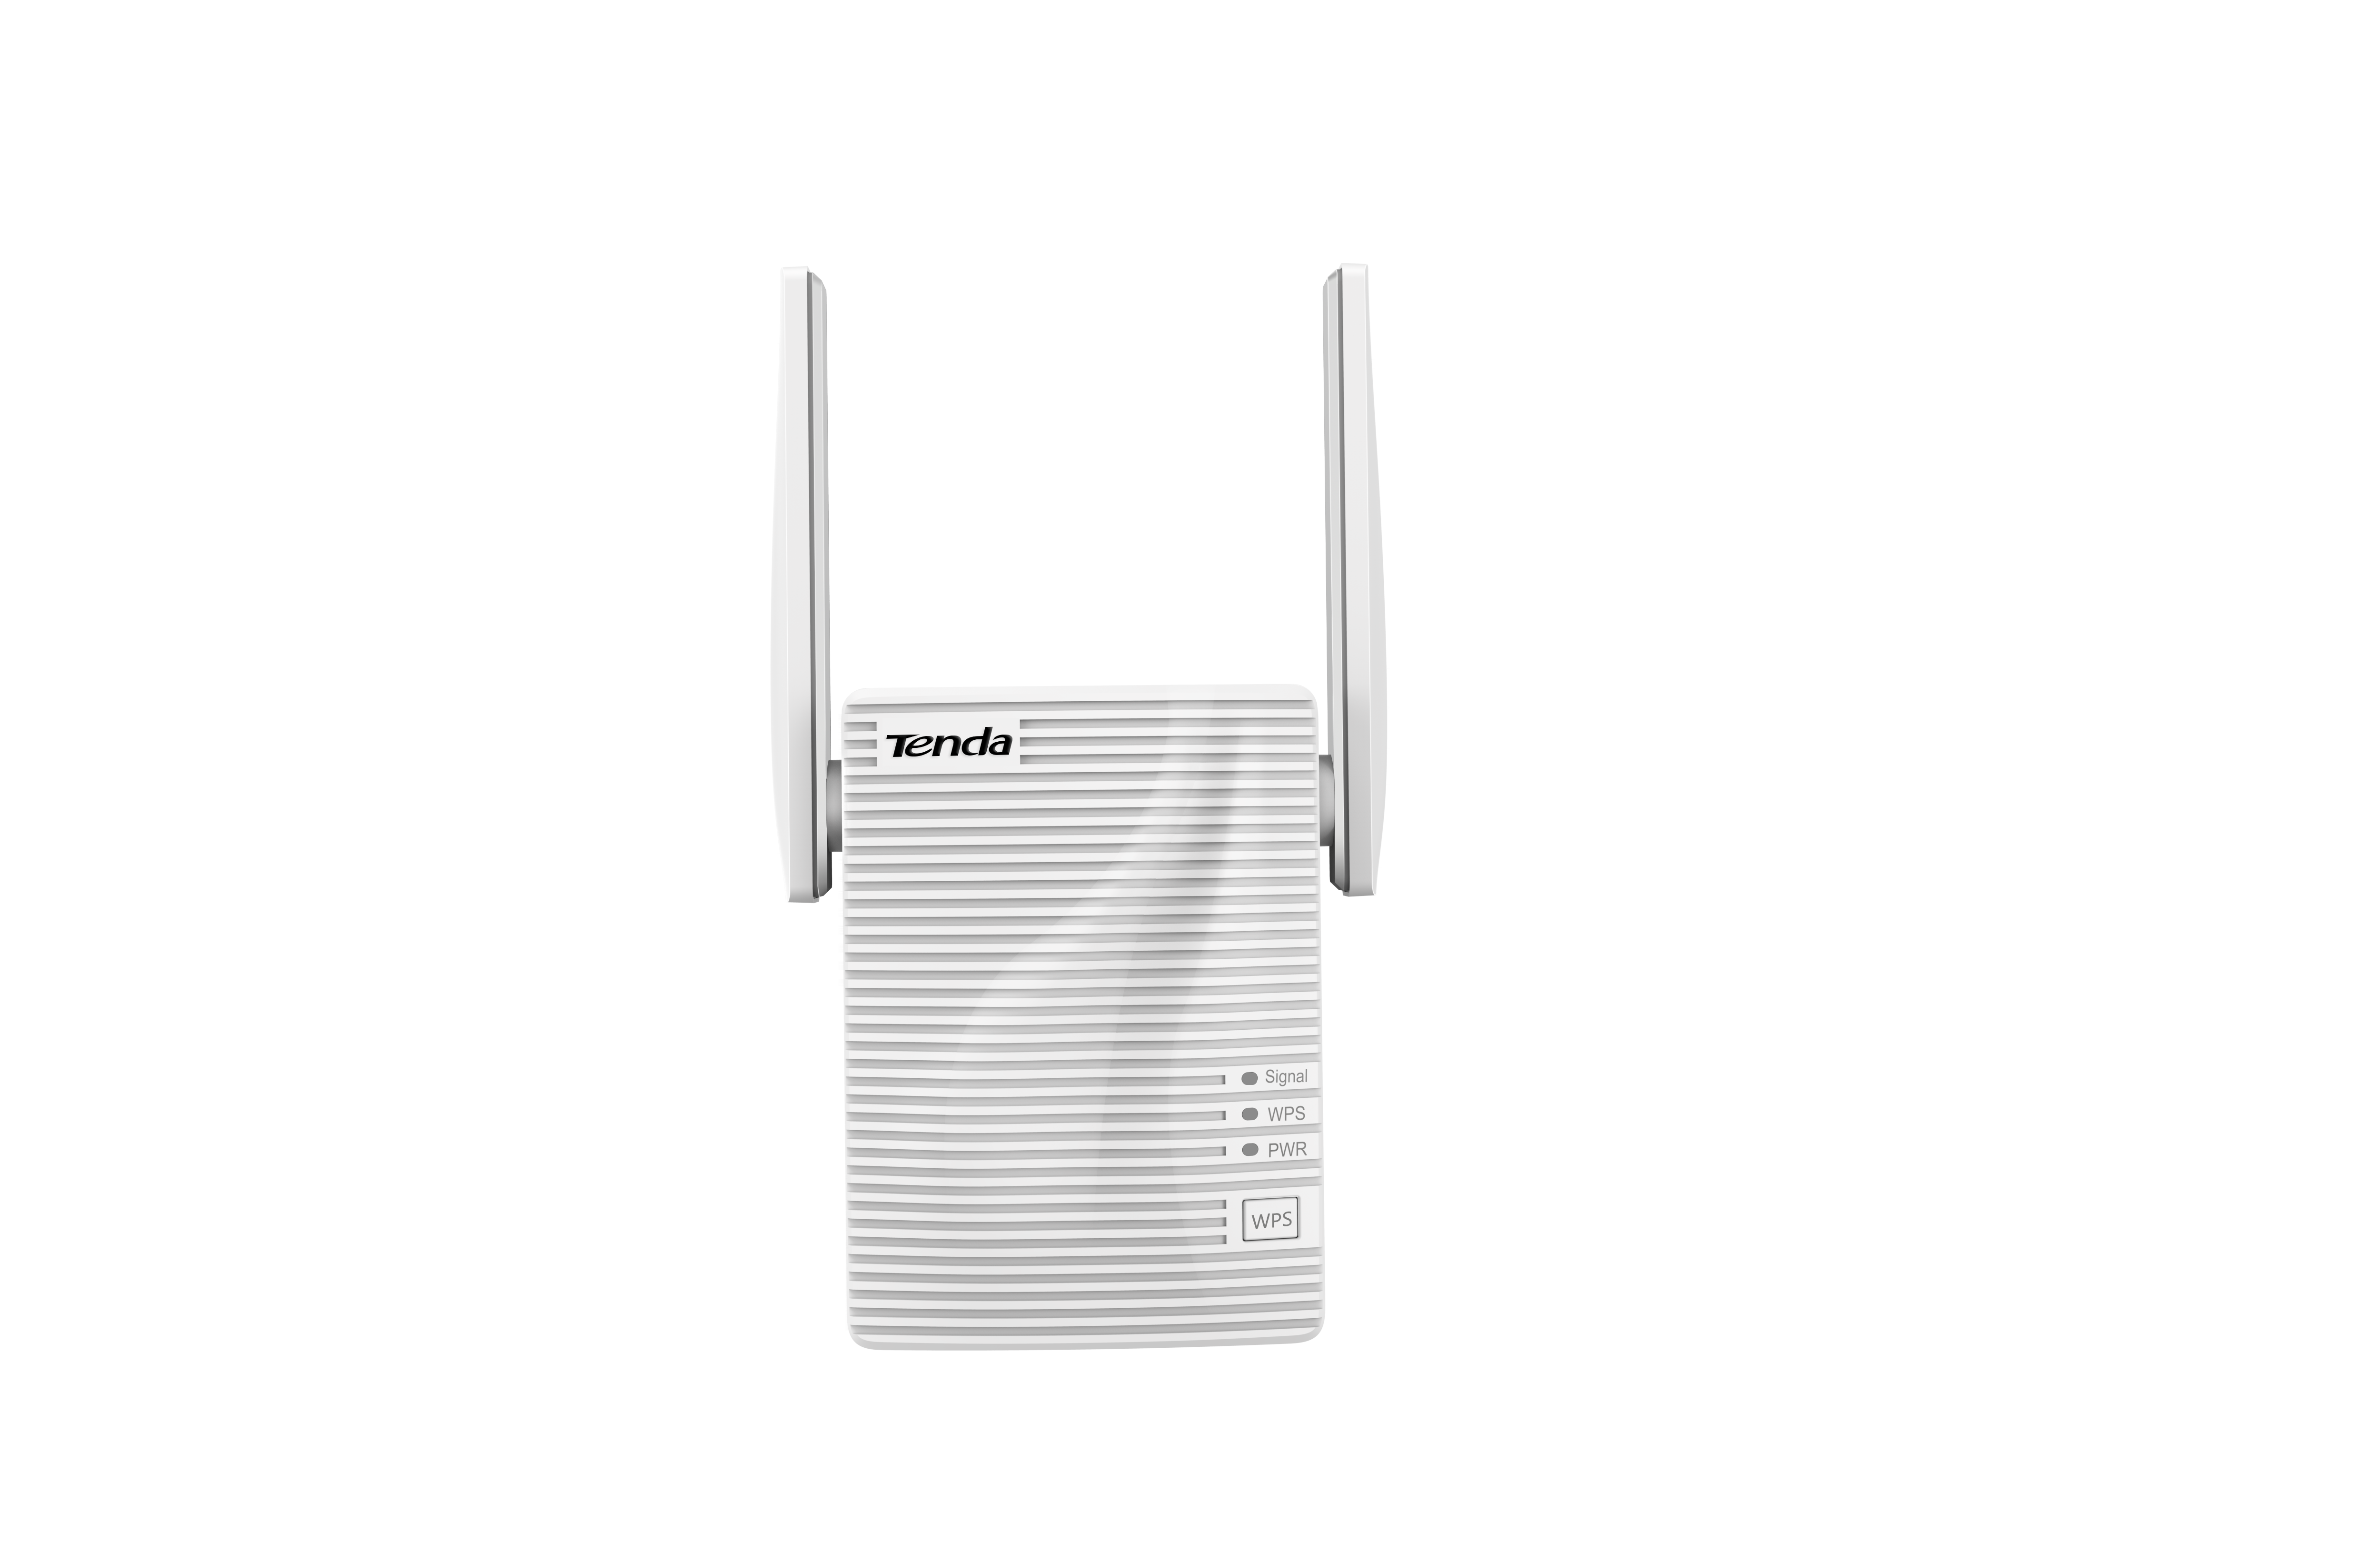 Repetidor Wifi Tenda a301 300mbps cable rj45 blanco v2.0 n300 2 antenas amplificador 300